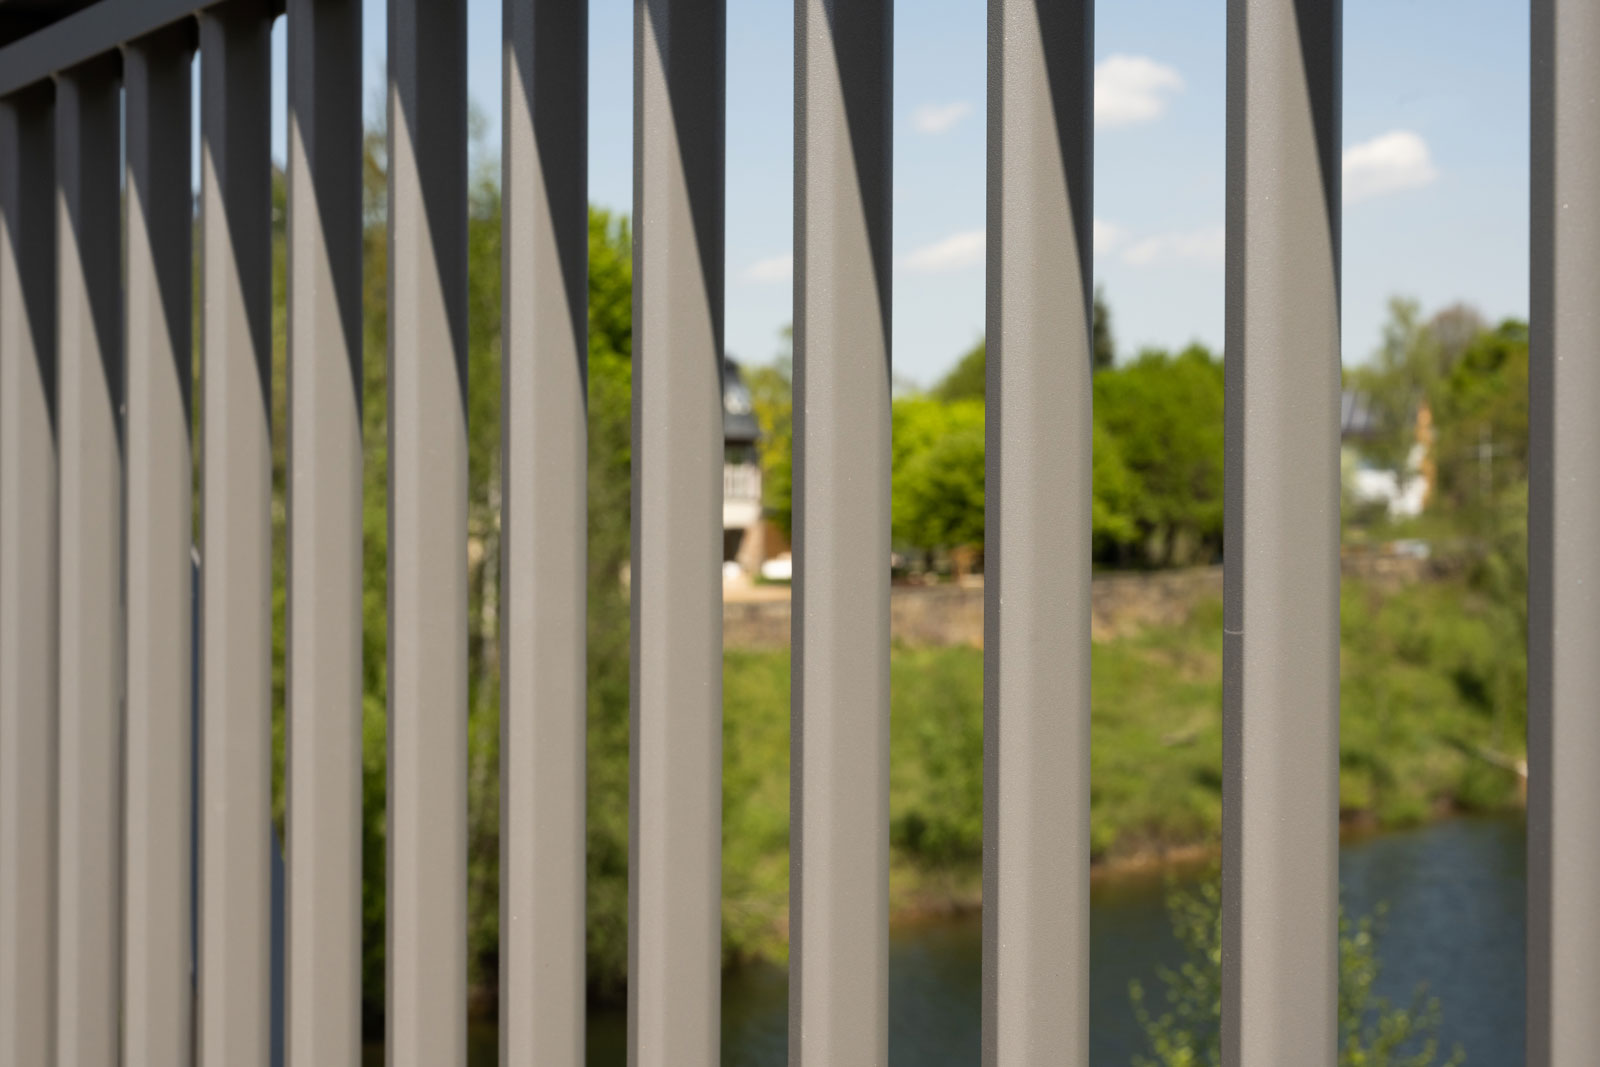 View through a bridge railing